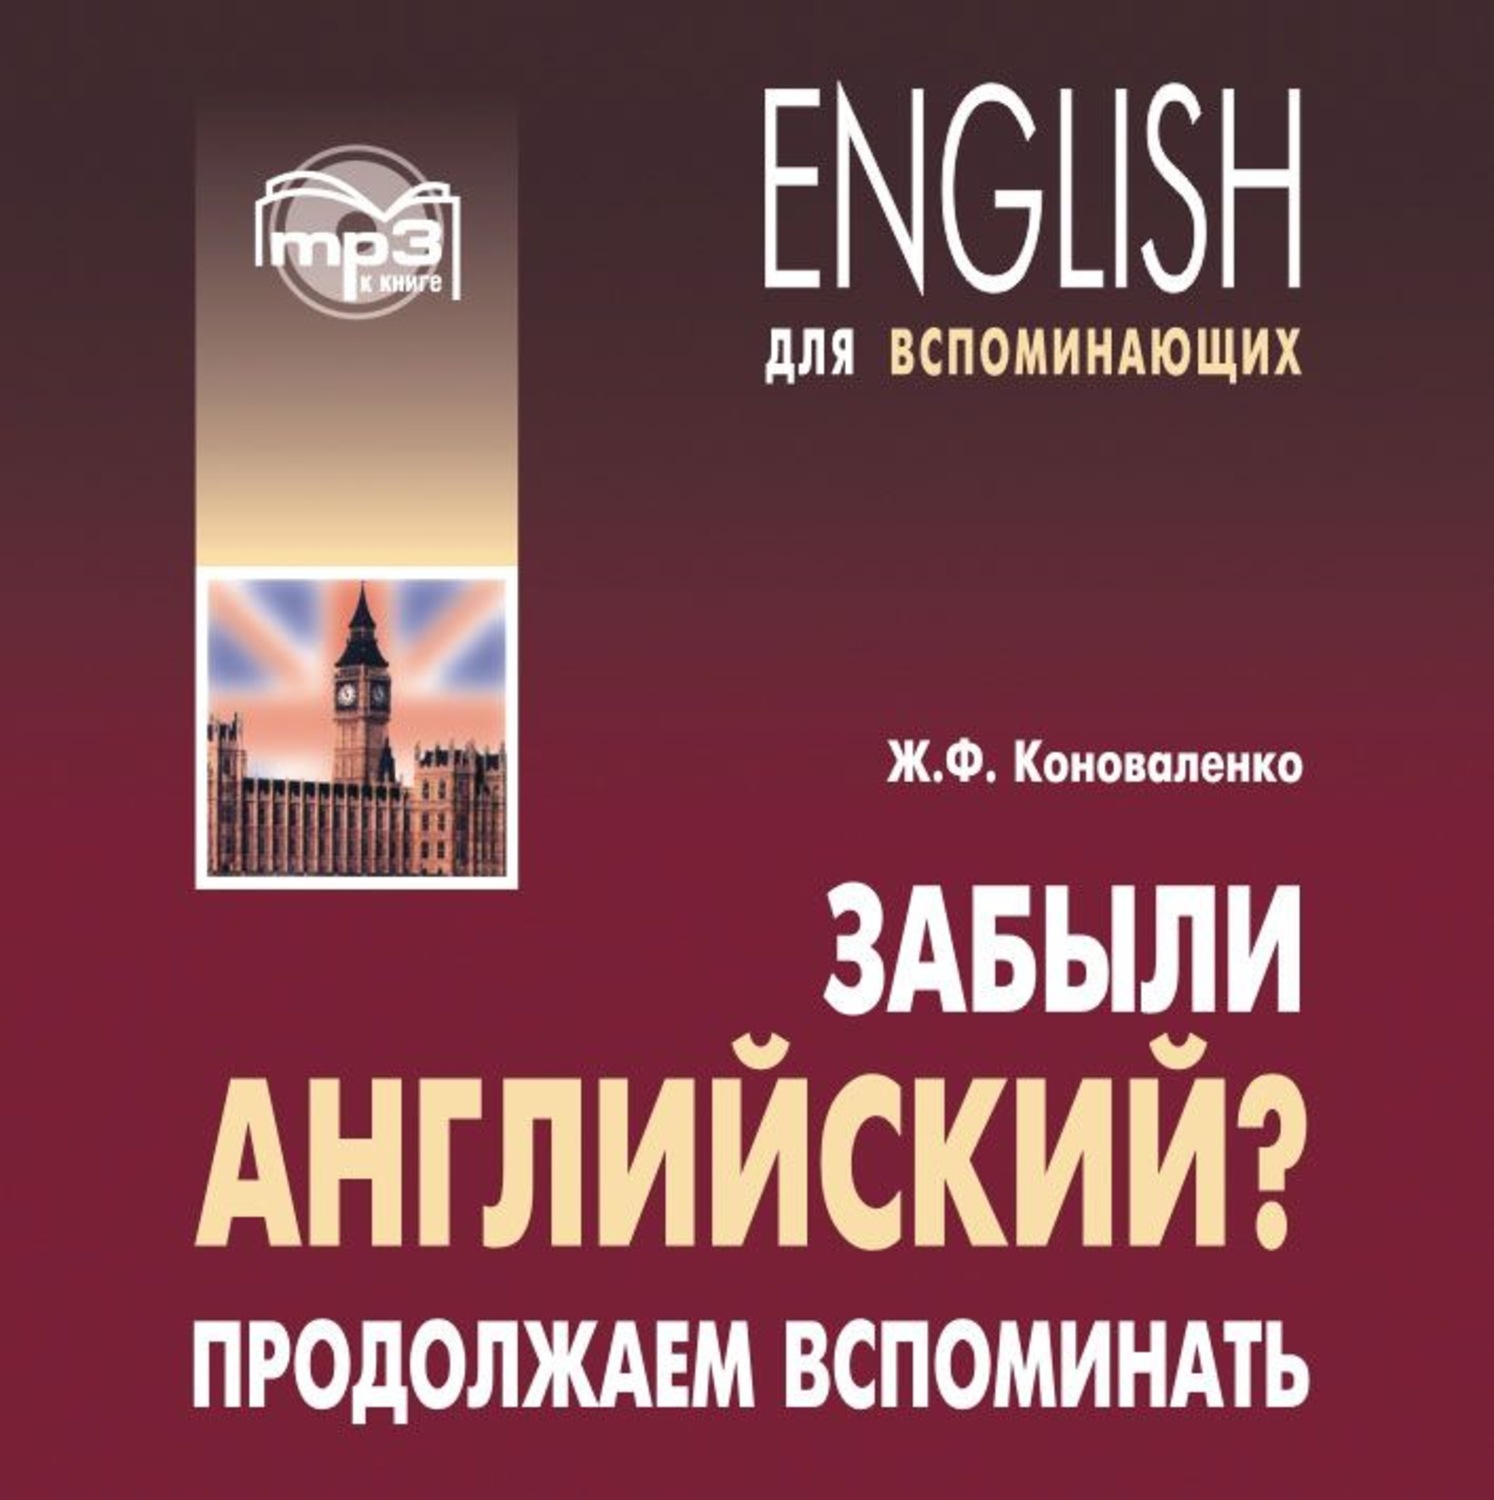 Вспомни аудиокнига. Английский для вспоминающих Коноваленко. Учебник английский для продолжающих. Вспомнить на английском. Коноваленко книги.